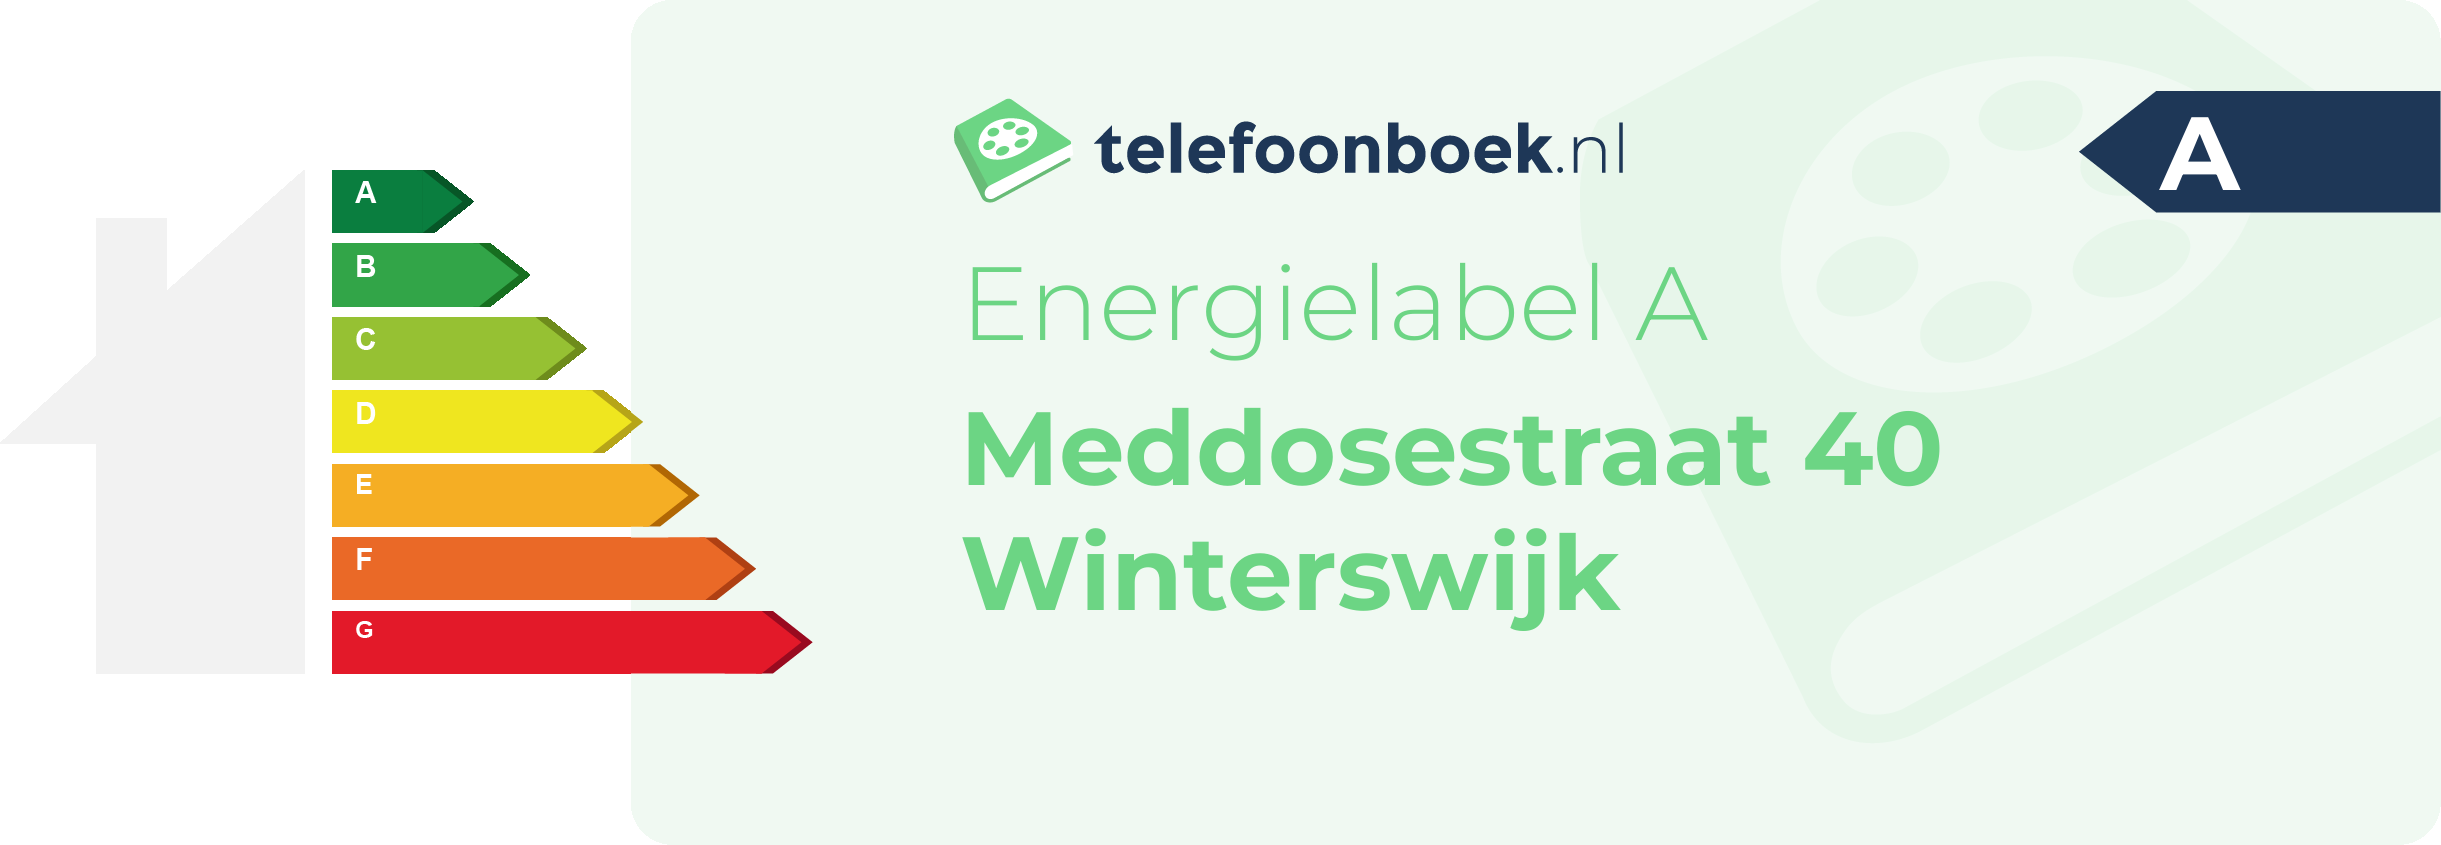 Energielabel Meddosestraat 40 Winterswijk